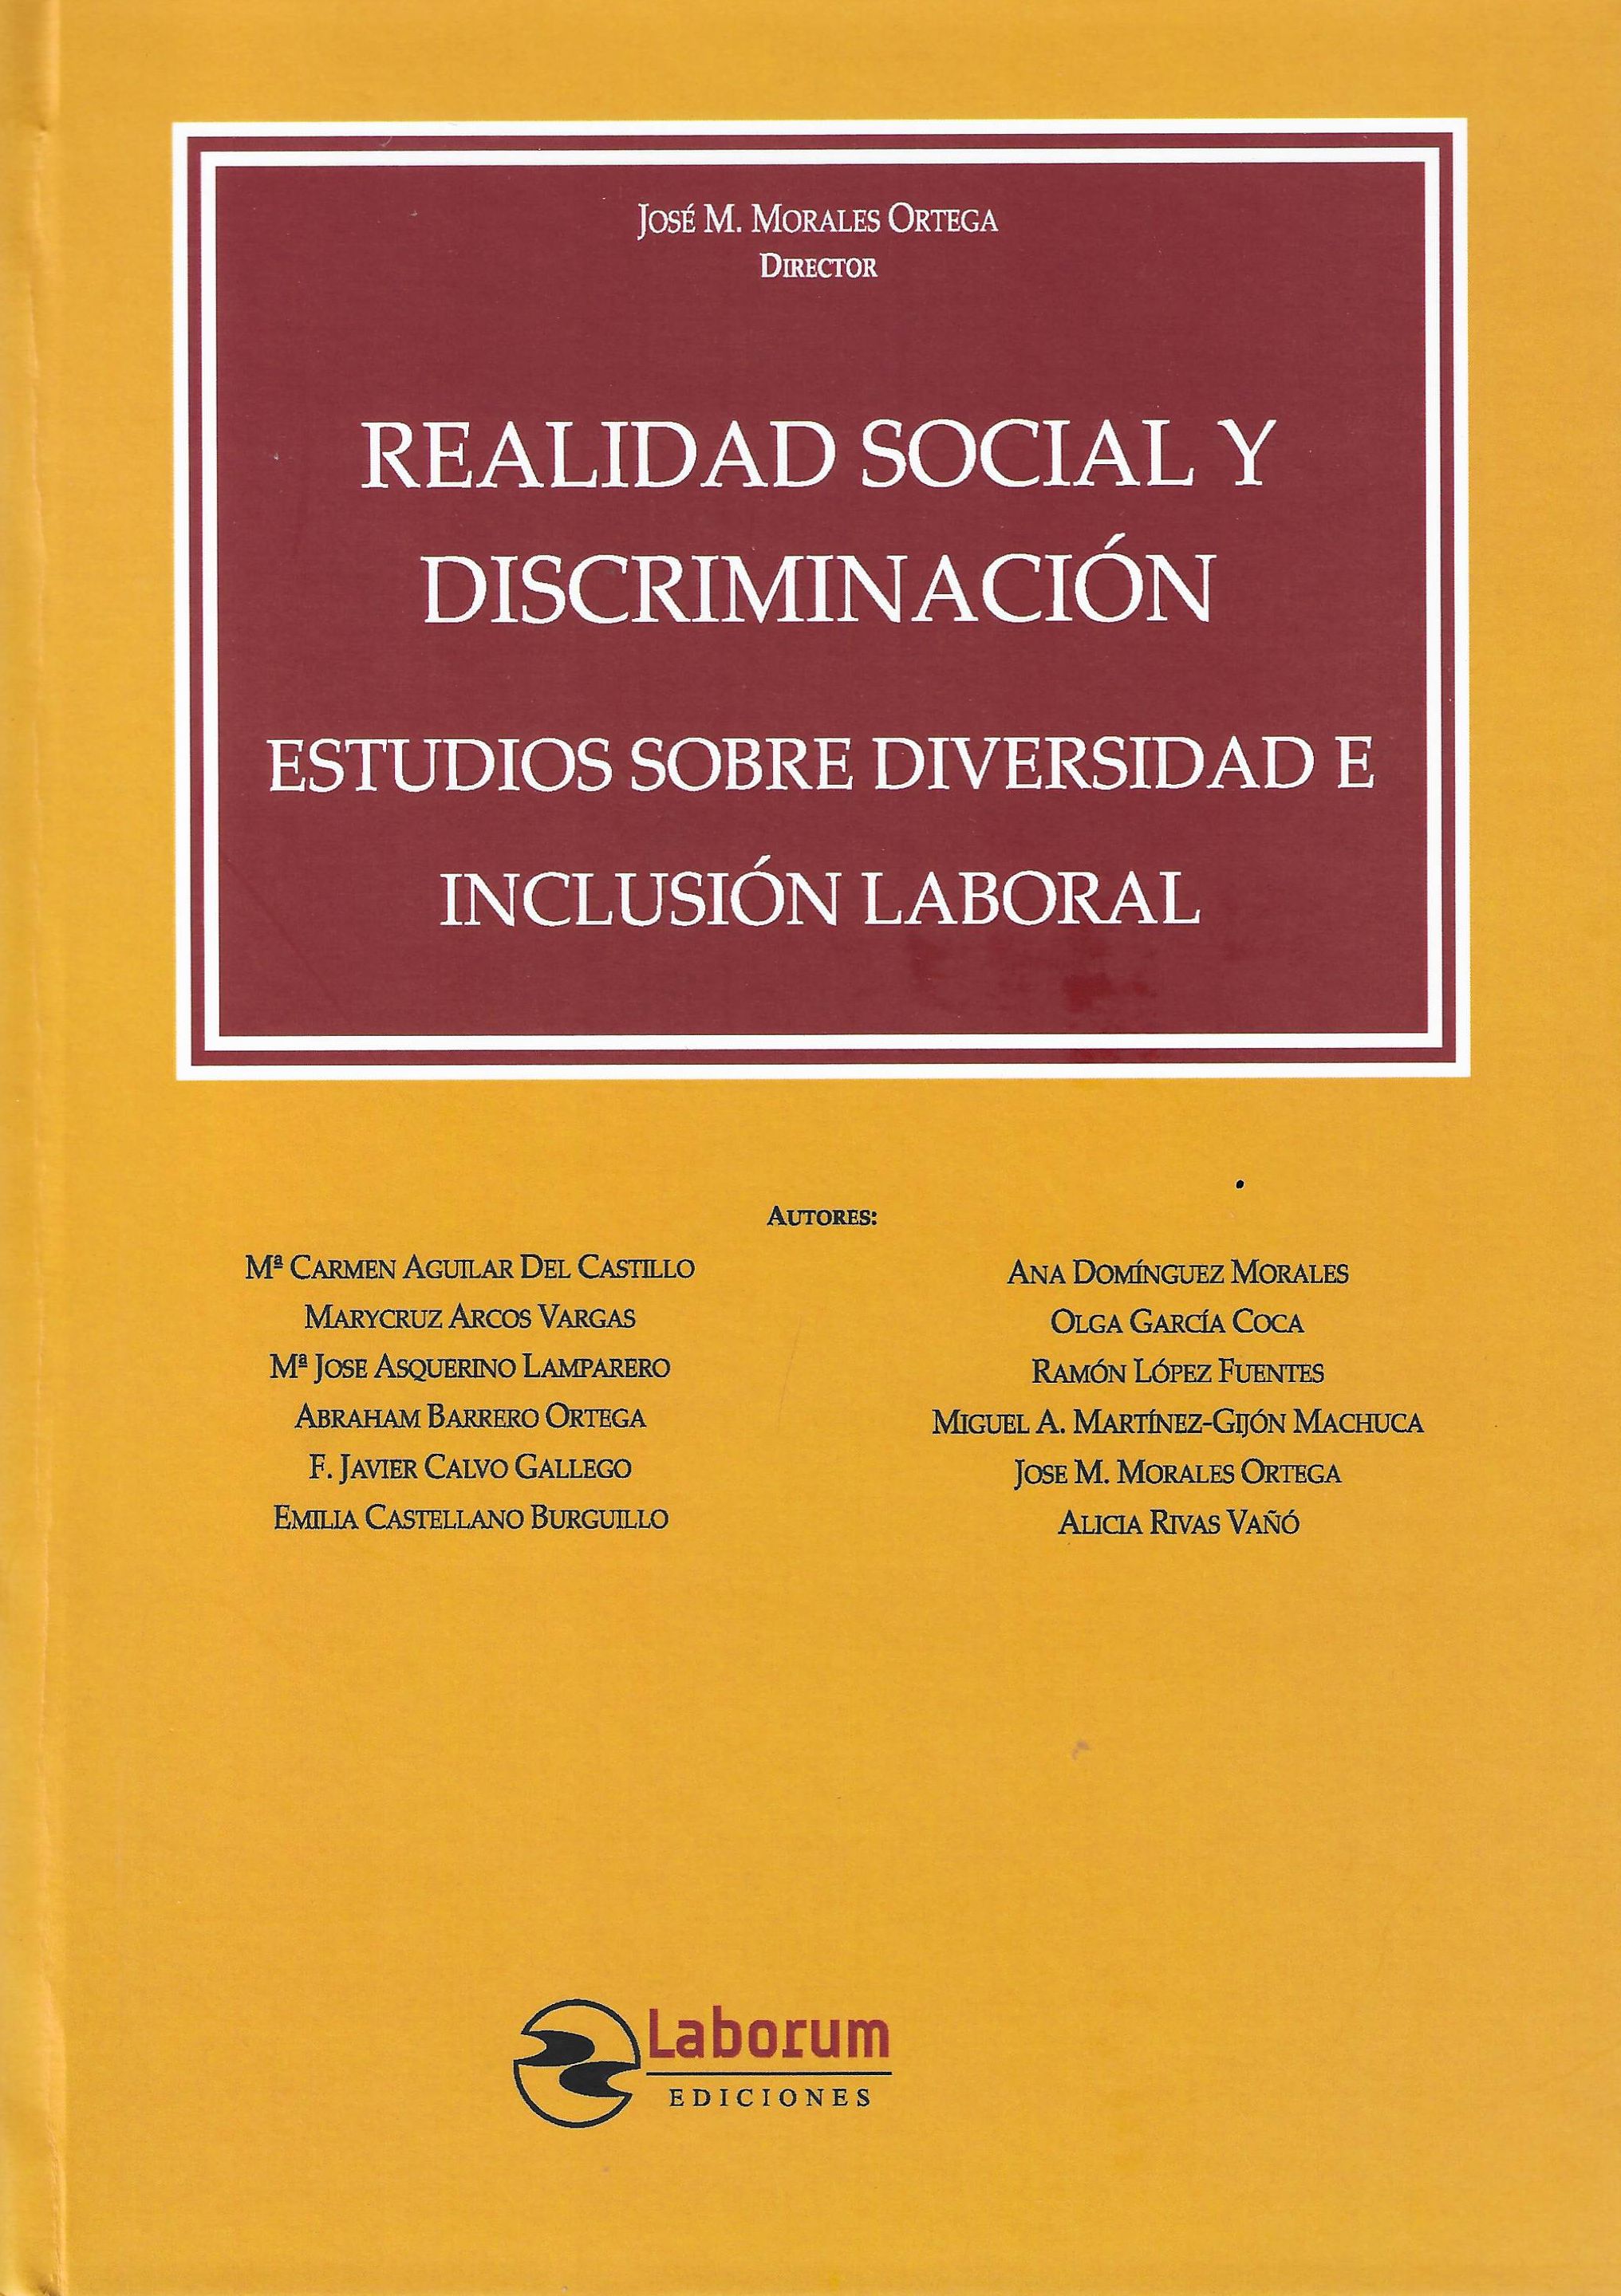 Imagen de portada del libro Realidad social y discriminación